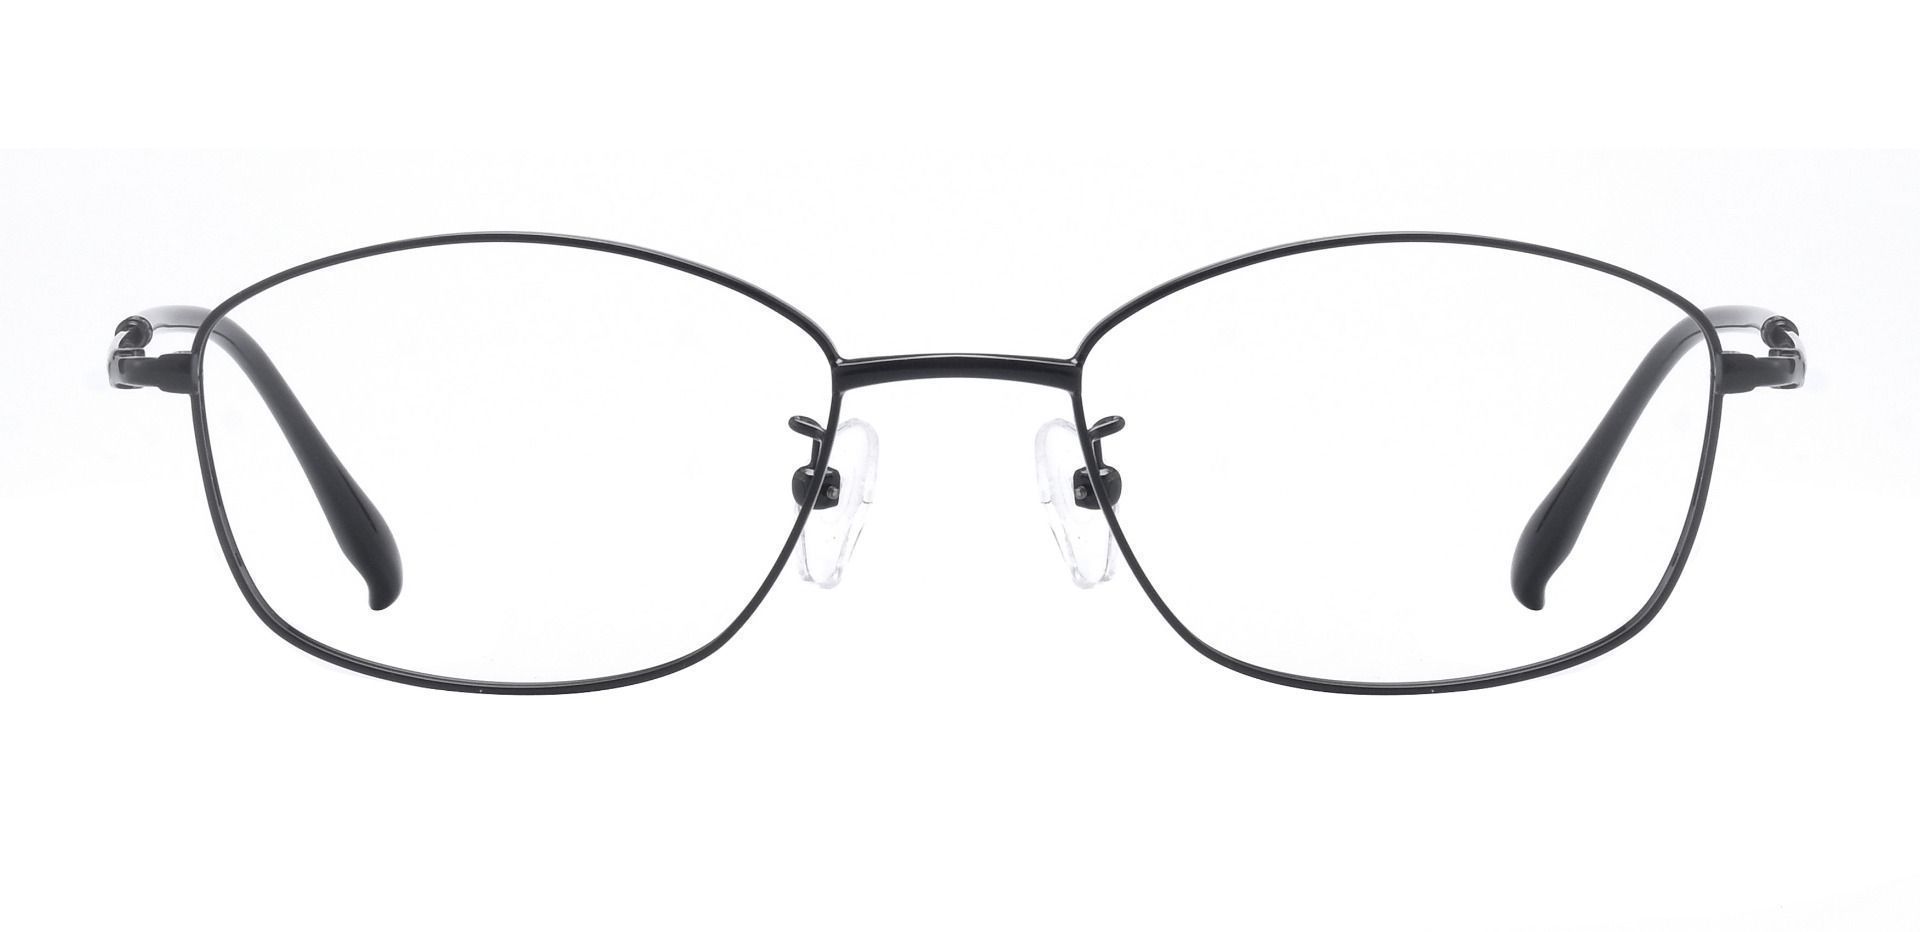 Cortland Oval Prescription Glasses - Black